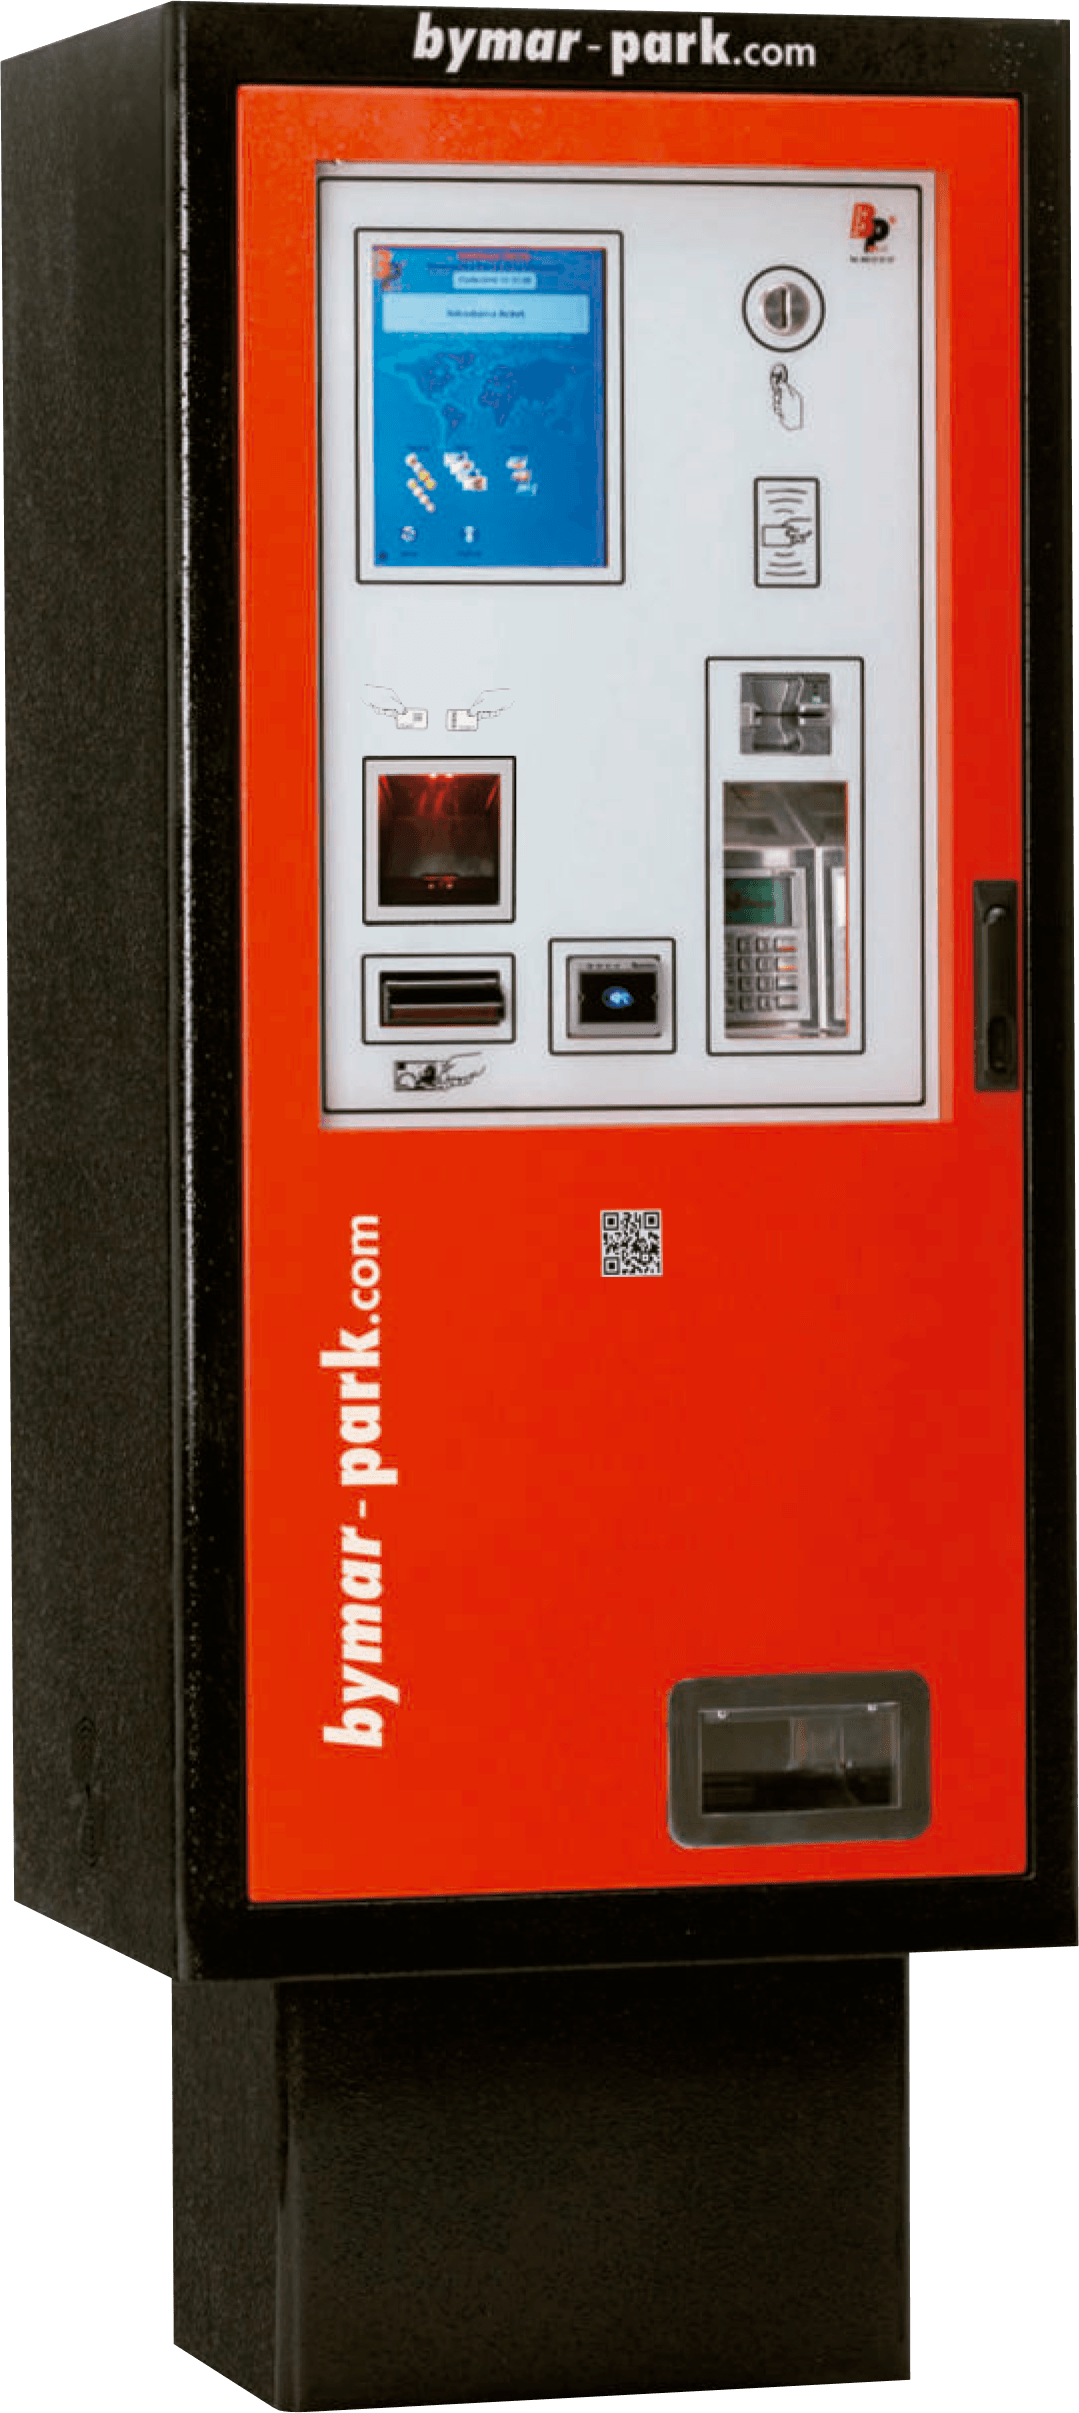 BP-5000/CB - Cajero automático de parking